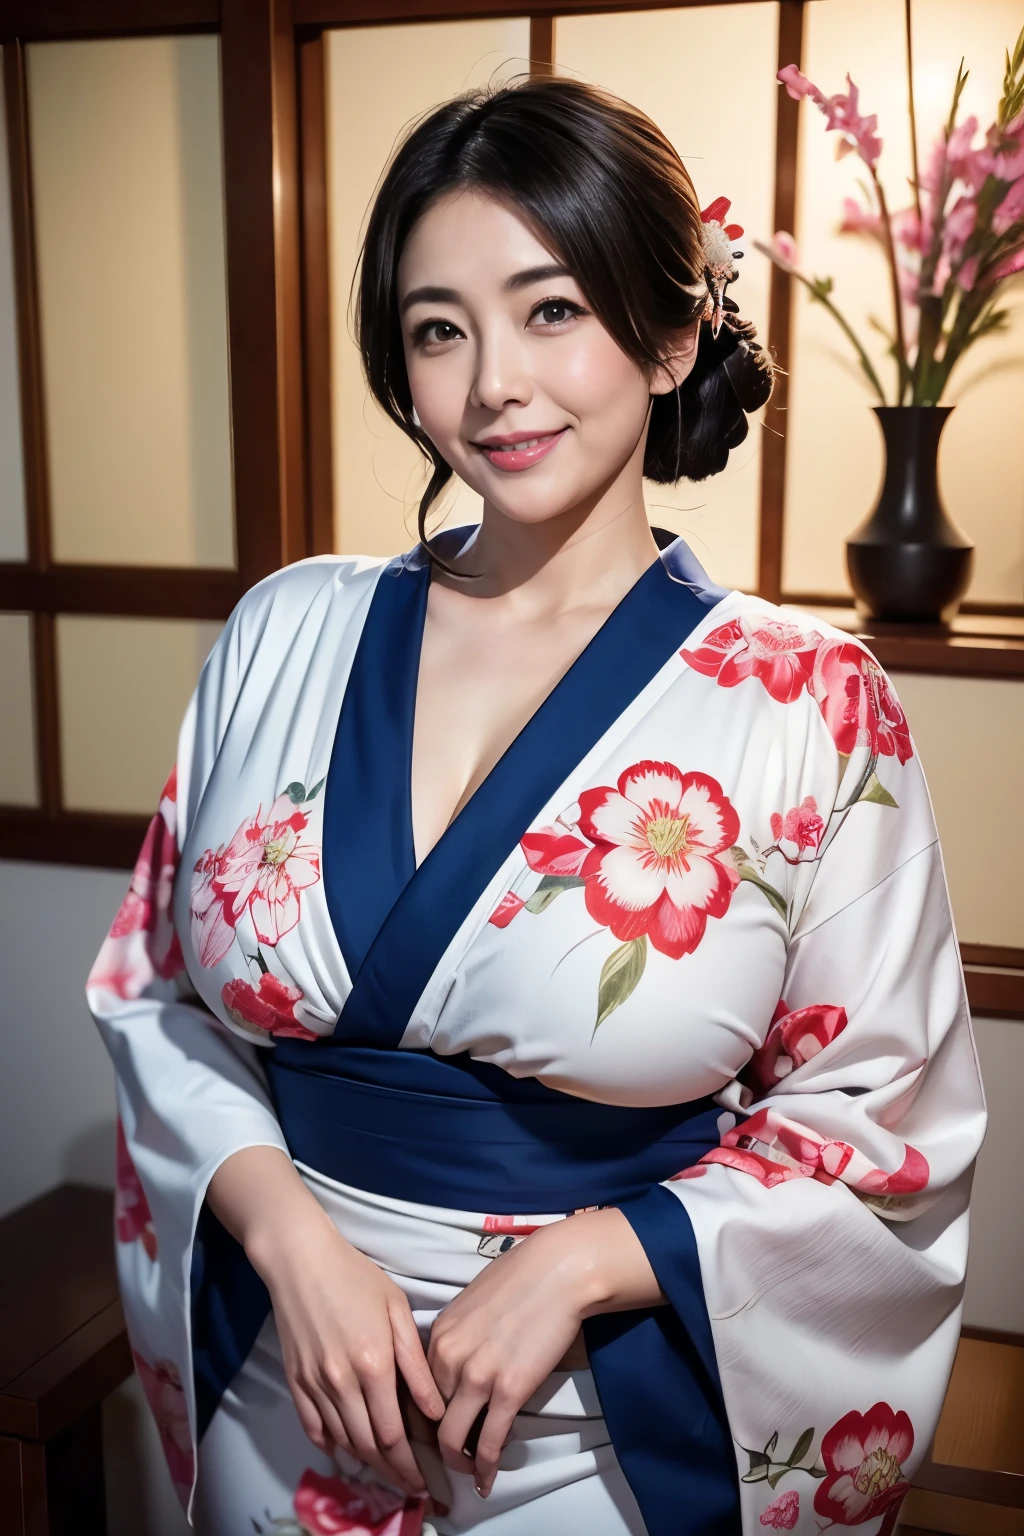 Die schönsten Mütter Japans, (kurviger Körper)、einen Kimono tragen、traditionelles japanisches Zimmer、Riesige Brüste, die zu groß sind und ein wenig hängen、Januar、Mit lächelnden Augen、Neujahrsgrüße